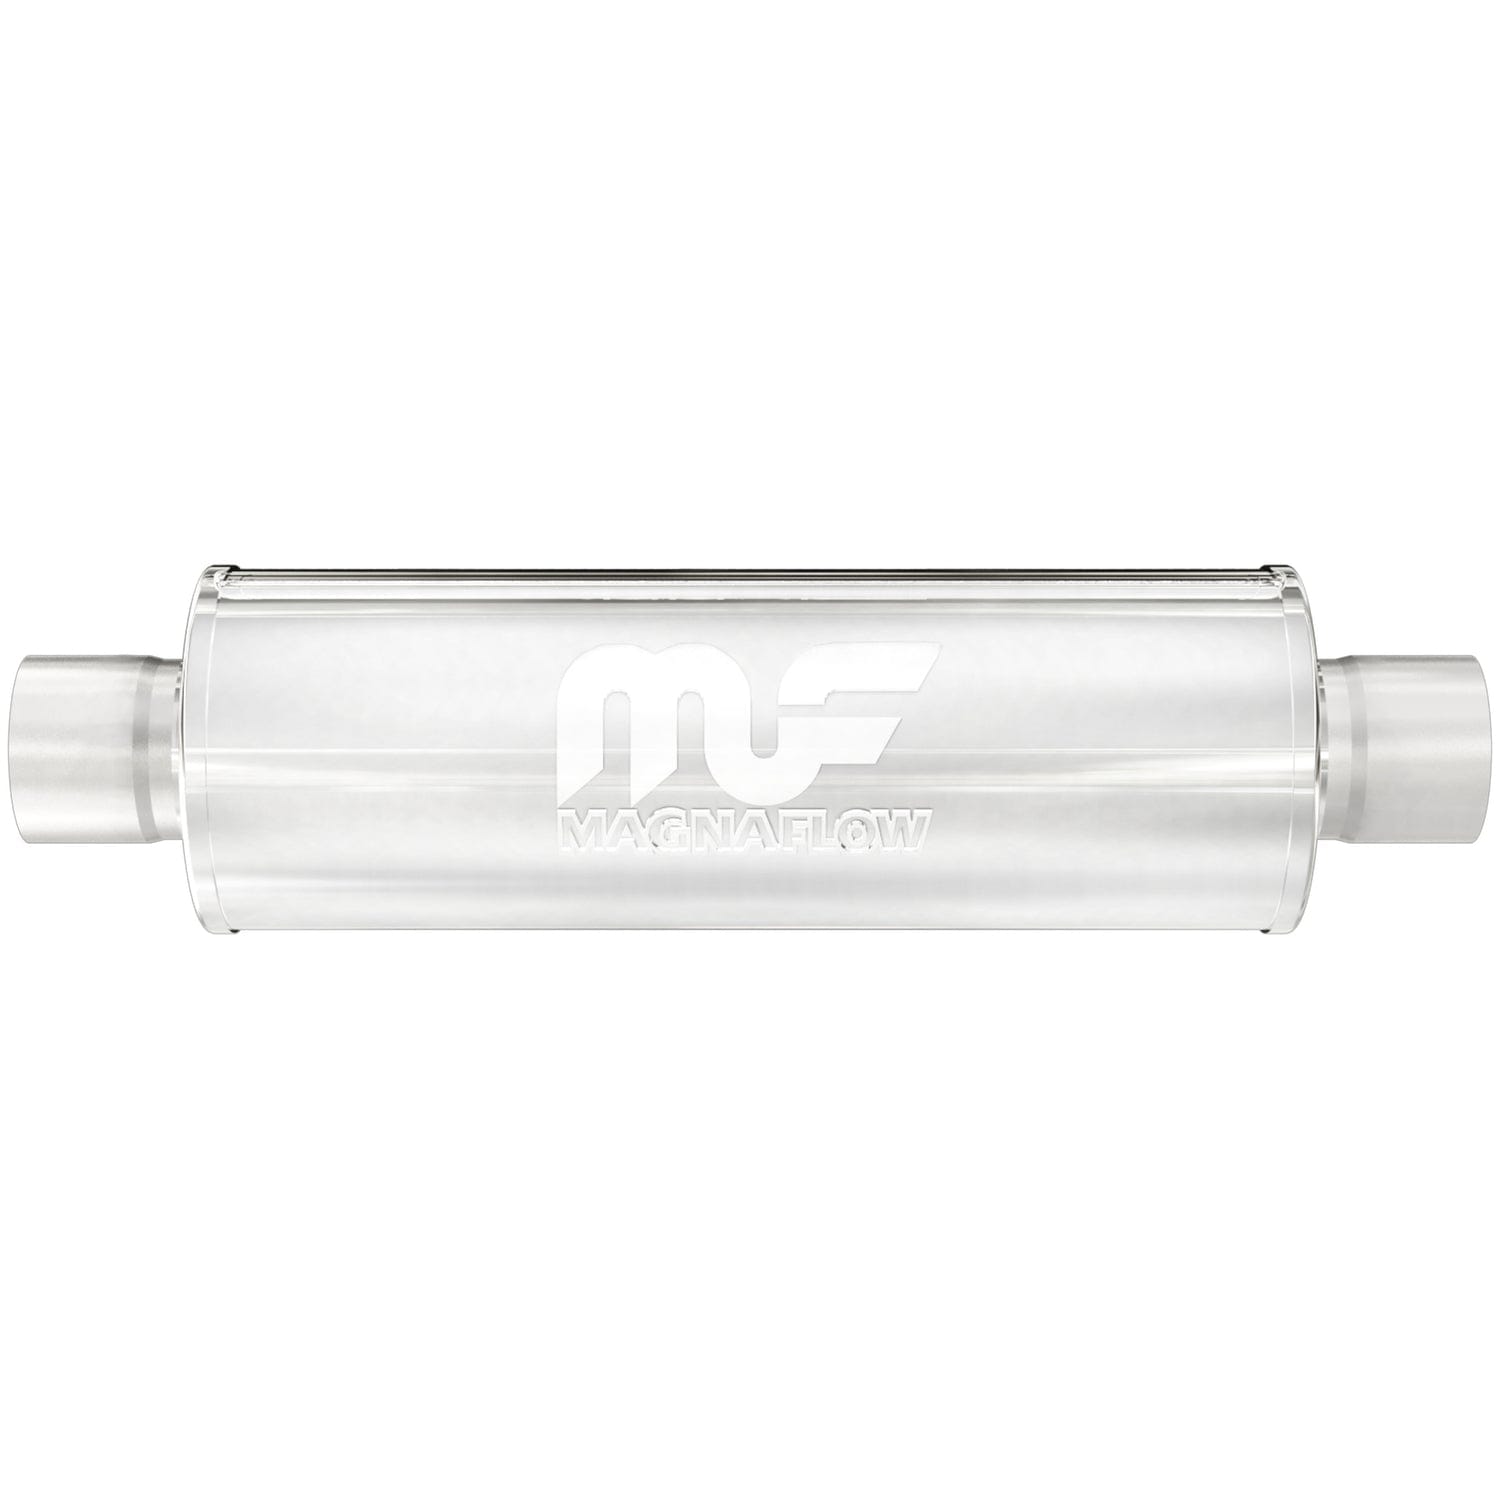 MagnaFlow 7in. Round Straight-Through Performance Exhaust Muffler